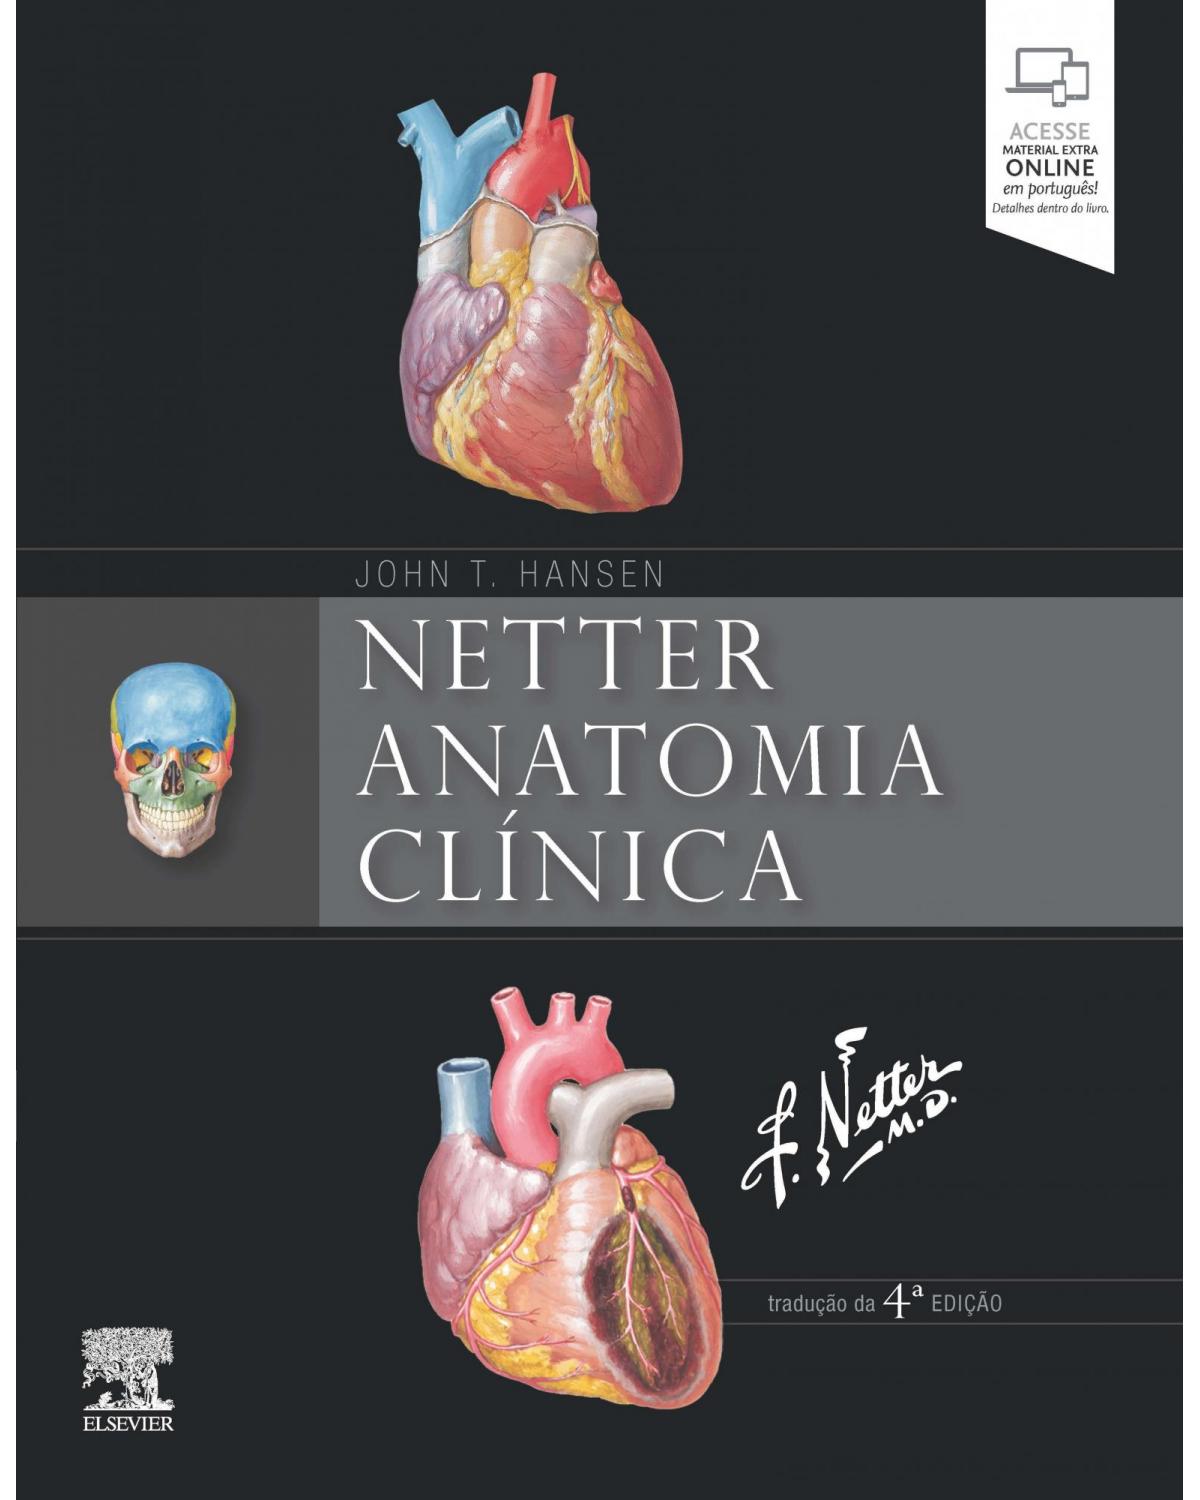 Netter - Anatomia clínica - 4ª Edição | 2019